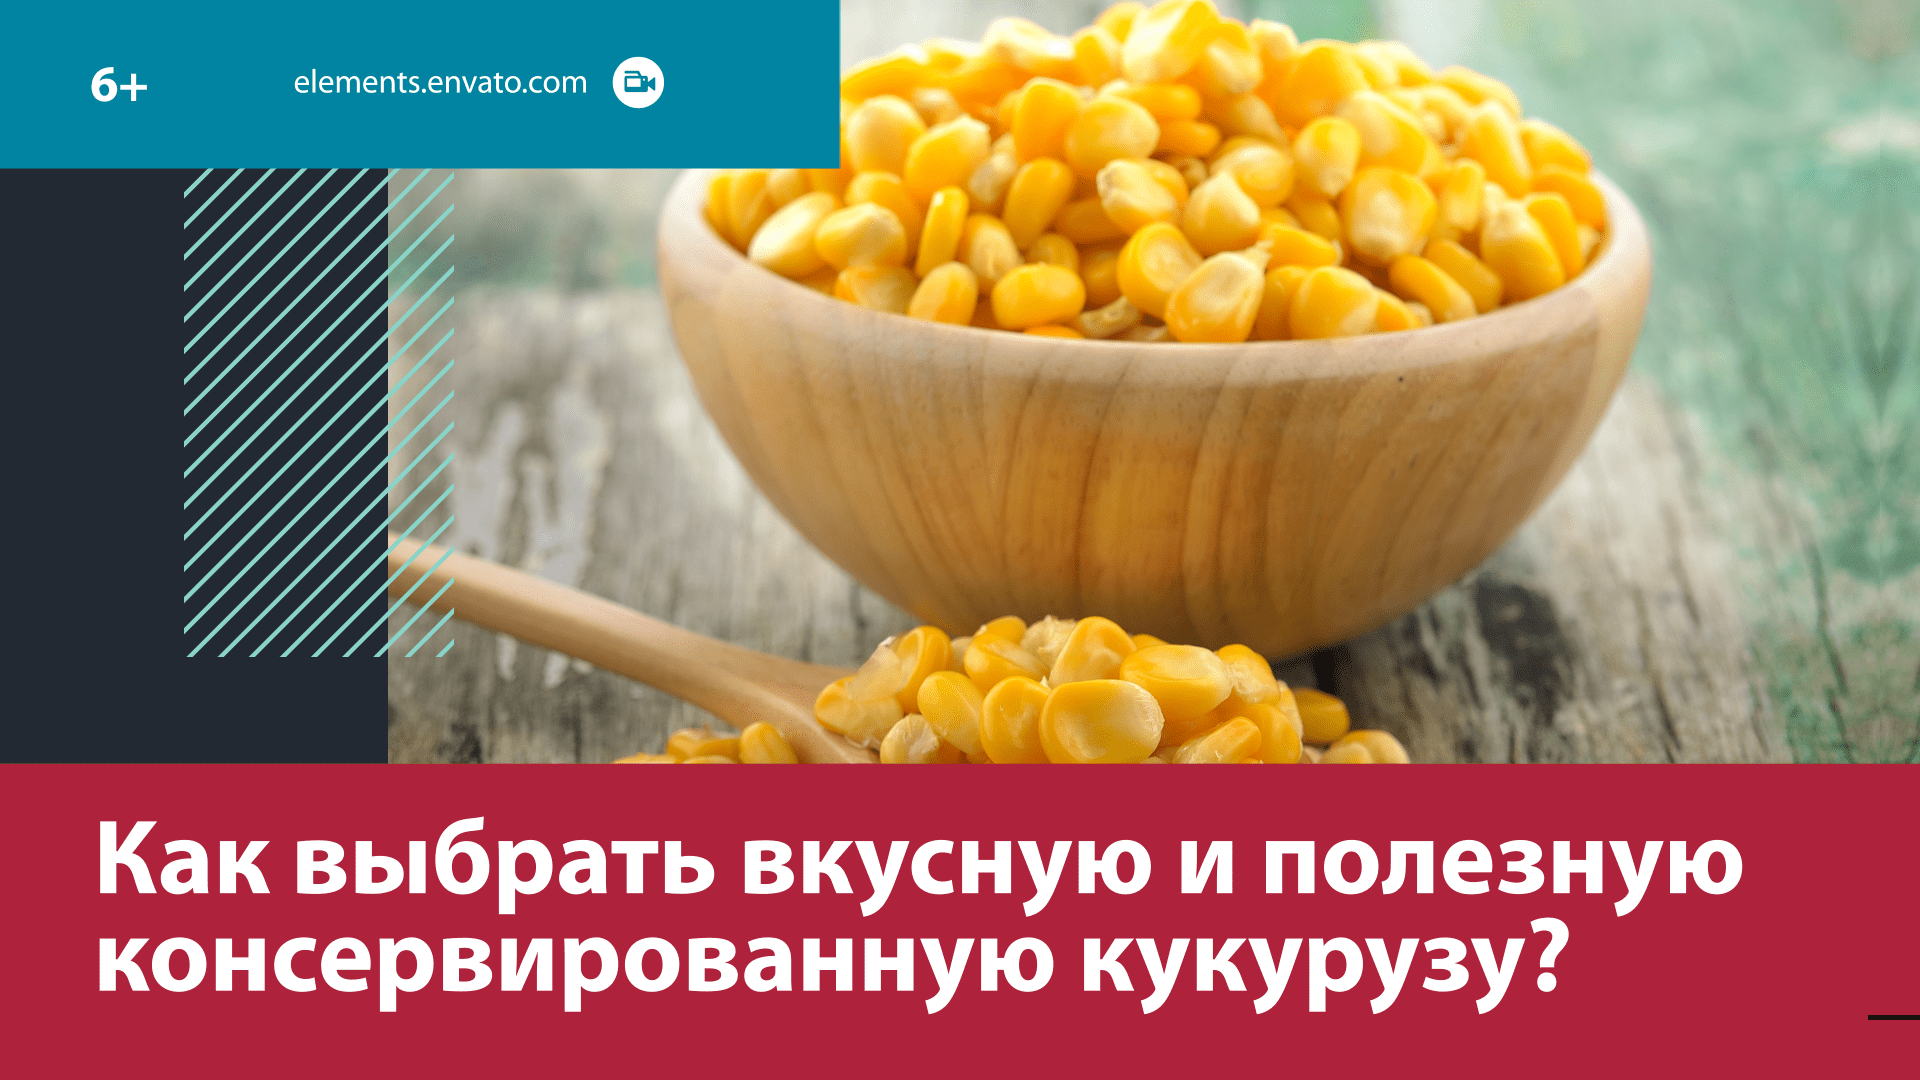 Как распознать в магазине высококачественную консервированную кукурузу? — Москва FM